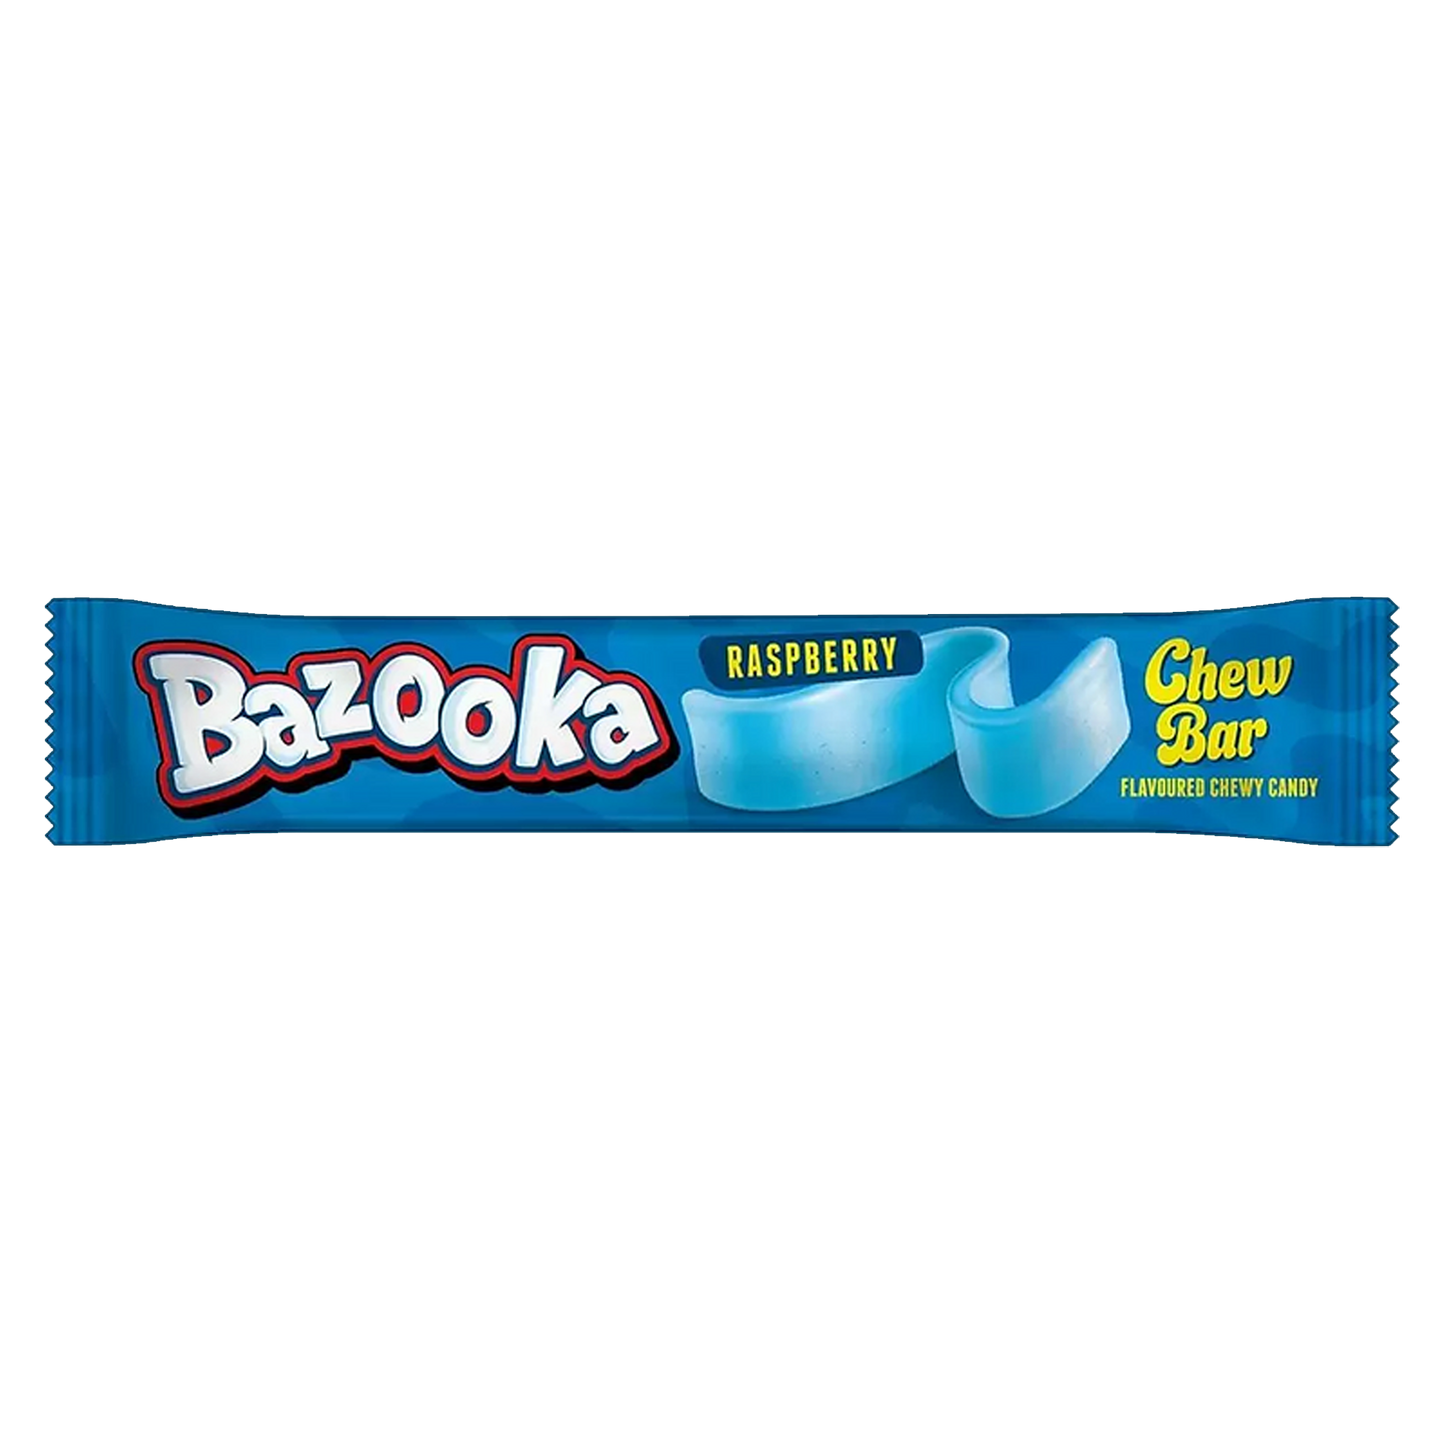 Bazooka Raspberry, gomma da masticare enorme al gusto lampone da 14g